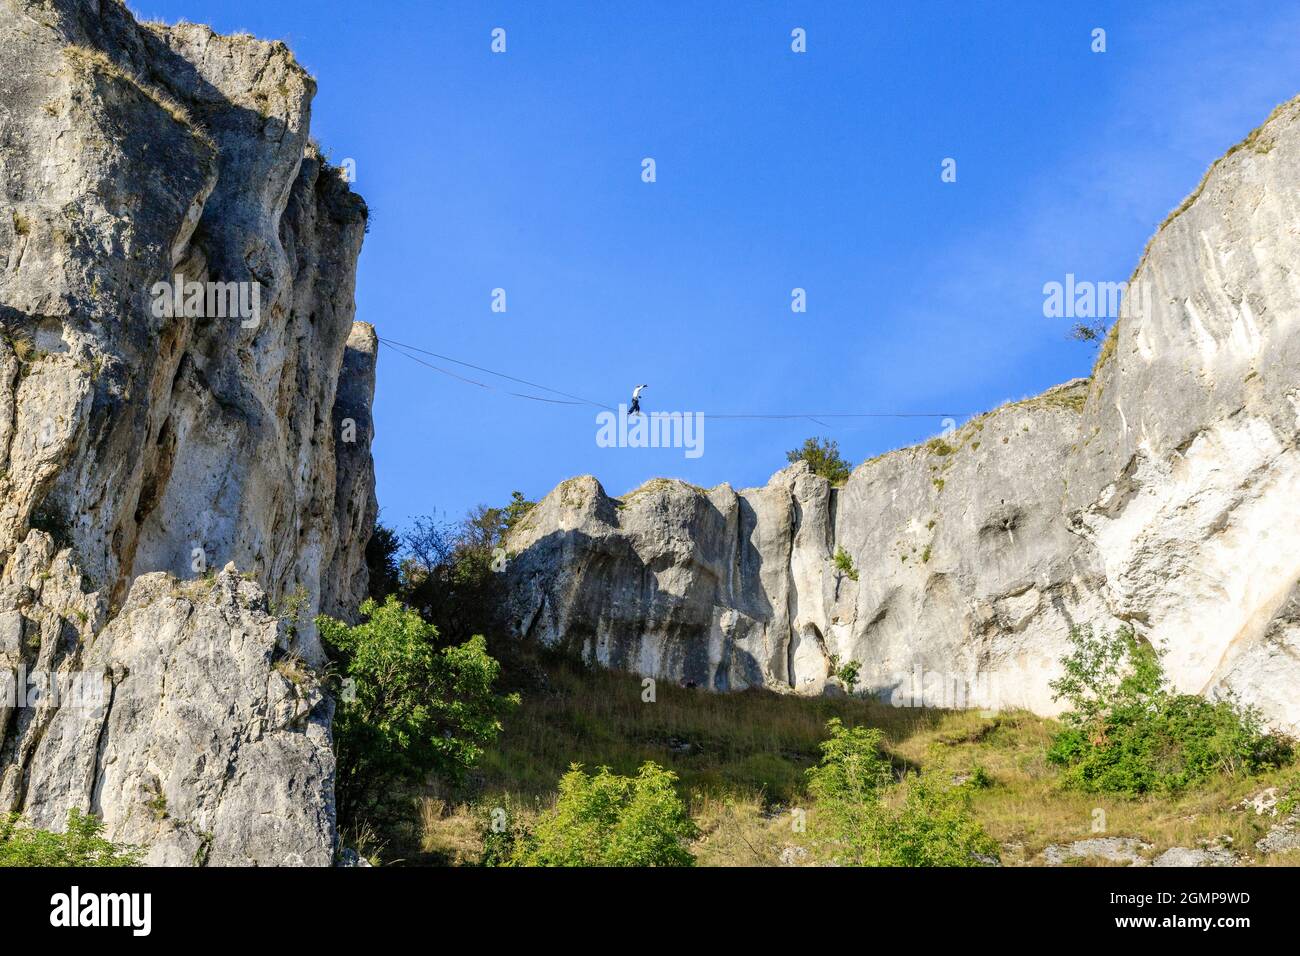 France, Yonne, Canal du Nivernais, Merry sur Yonne, le Saussois, Les  rochers du Saussois, célèbre site d'escalade en France, jeune homme sur une  ligne de relâche Photo Stock - Alamy